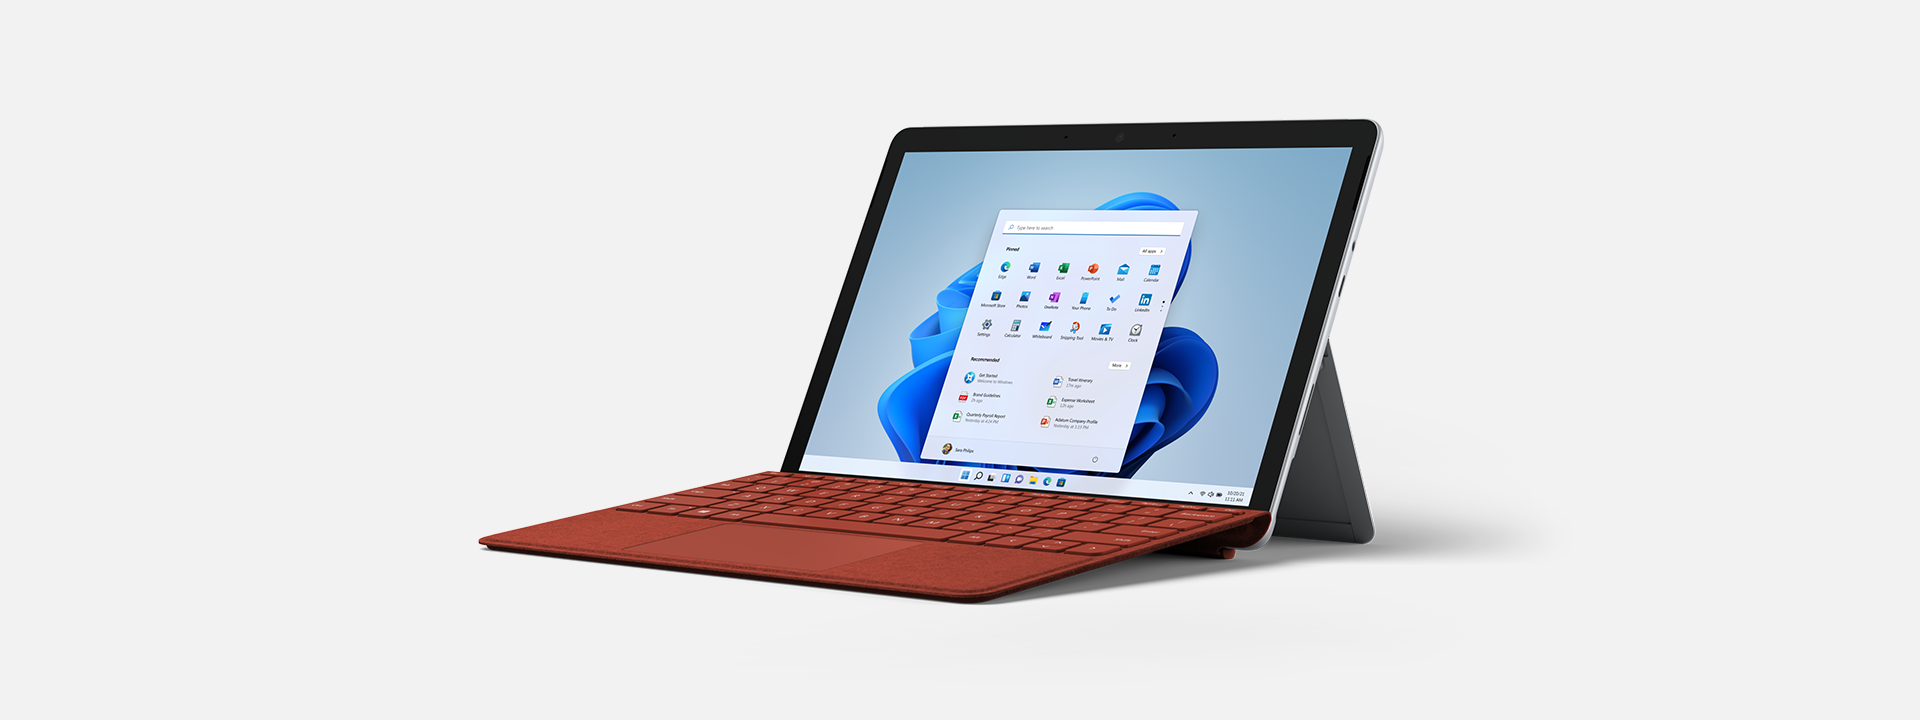 Bildschirm und Tastatur von Surface Go 3 for Business auf Kickstand.
